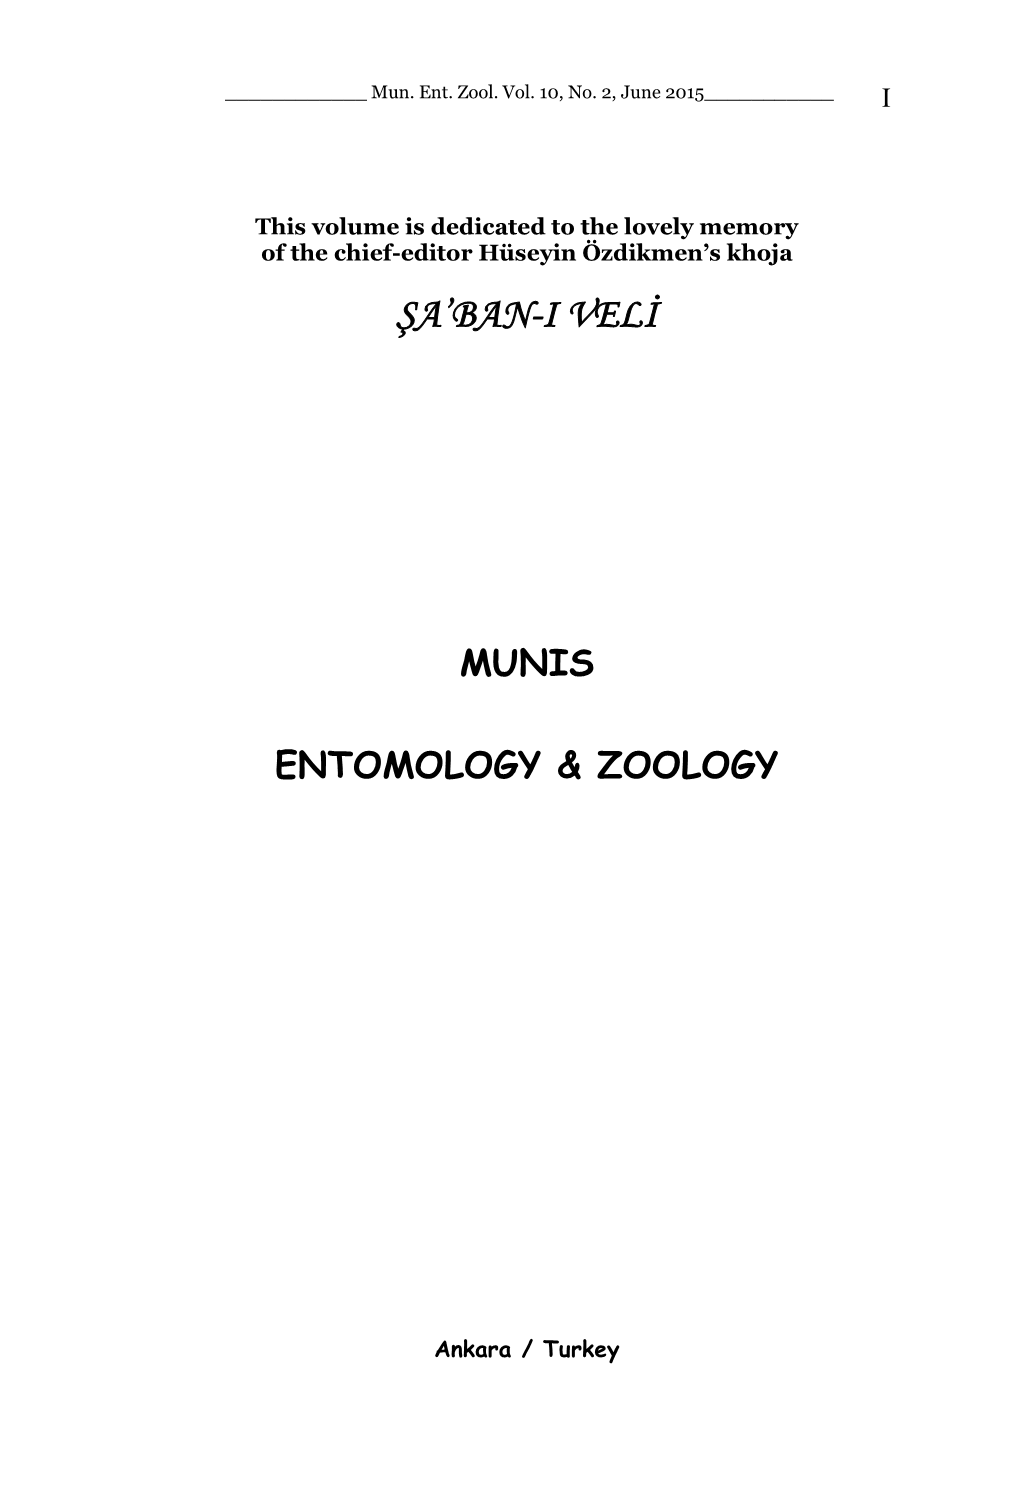 Scope: Munis Entomology & Zoology Publishes a Wide Variety Of